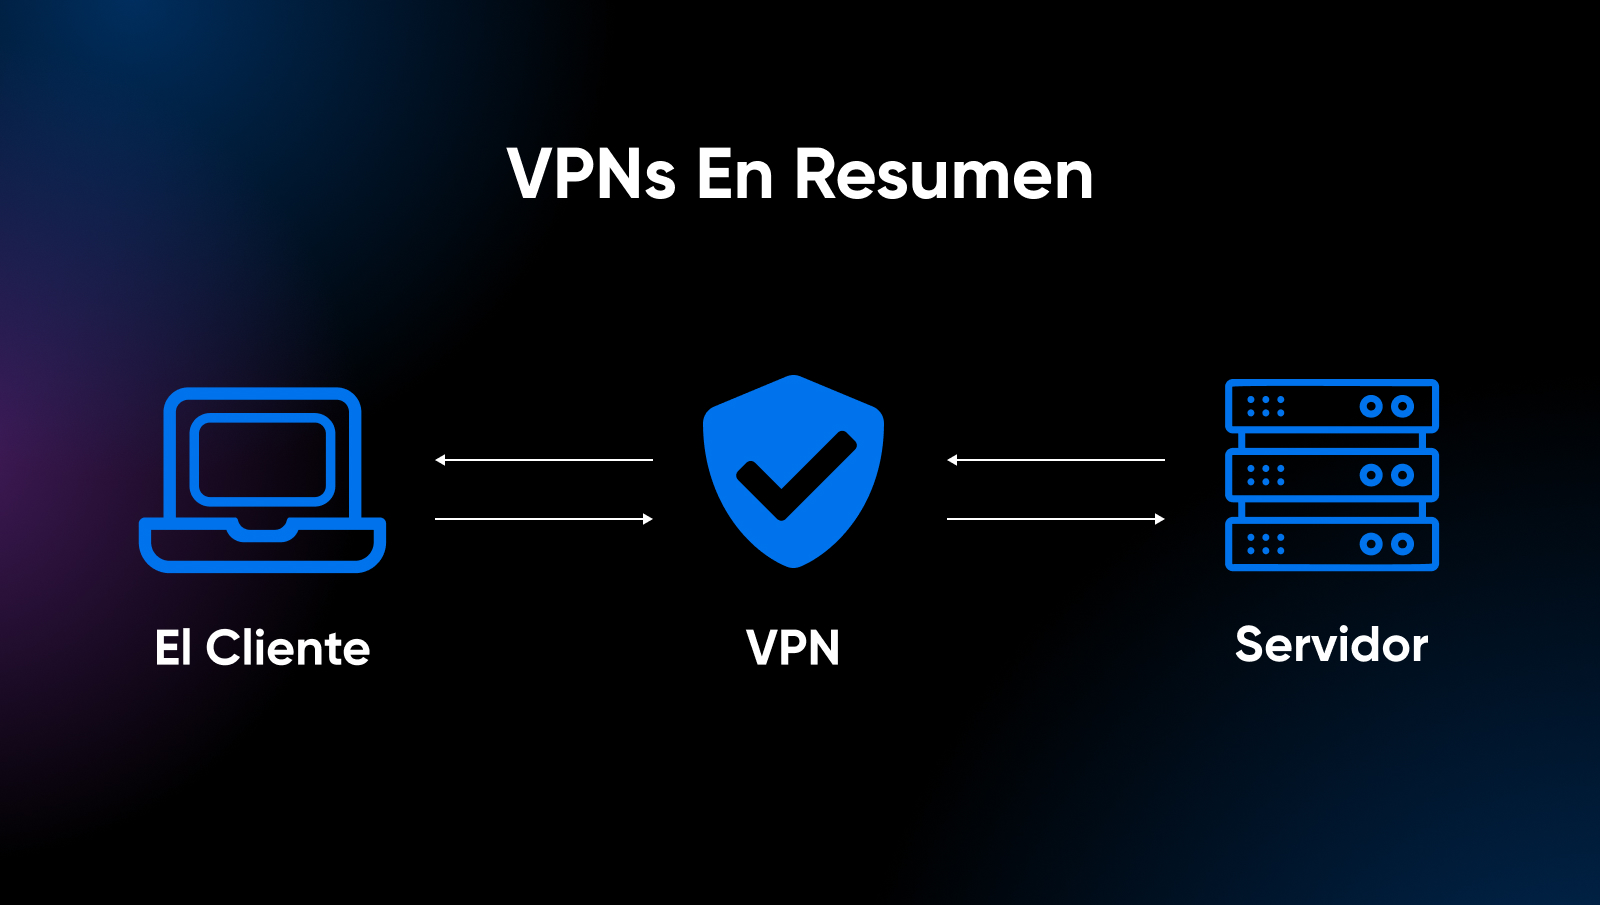 Breve explicación del funcionamiento de un VPN